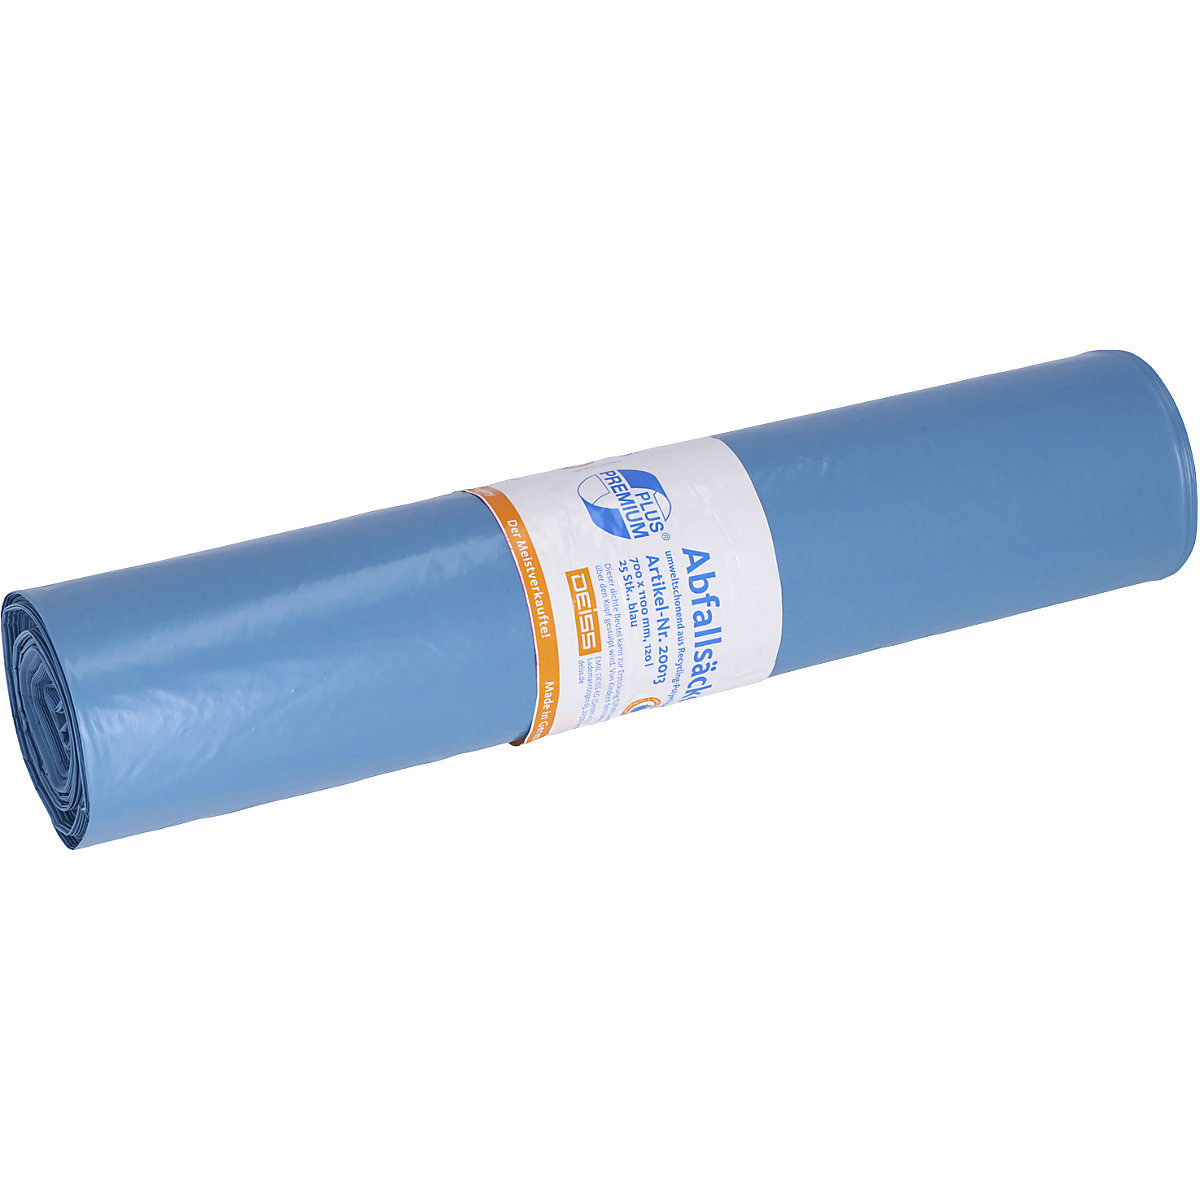 Deiss – Pytle na odpad PREMIUM PLUS, 120 l, klimaticky neutrální, modrá, bal.j. 250 ks, š x v 700 x 1100 mm, tloušťka materiálu 34 µm